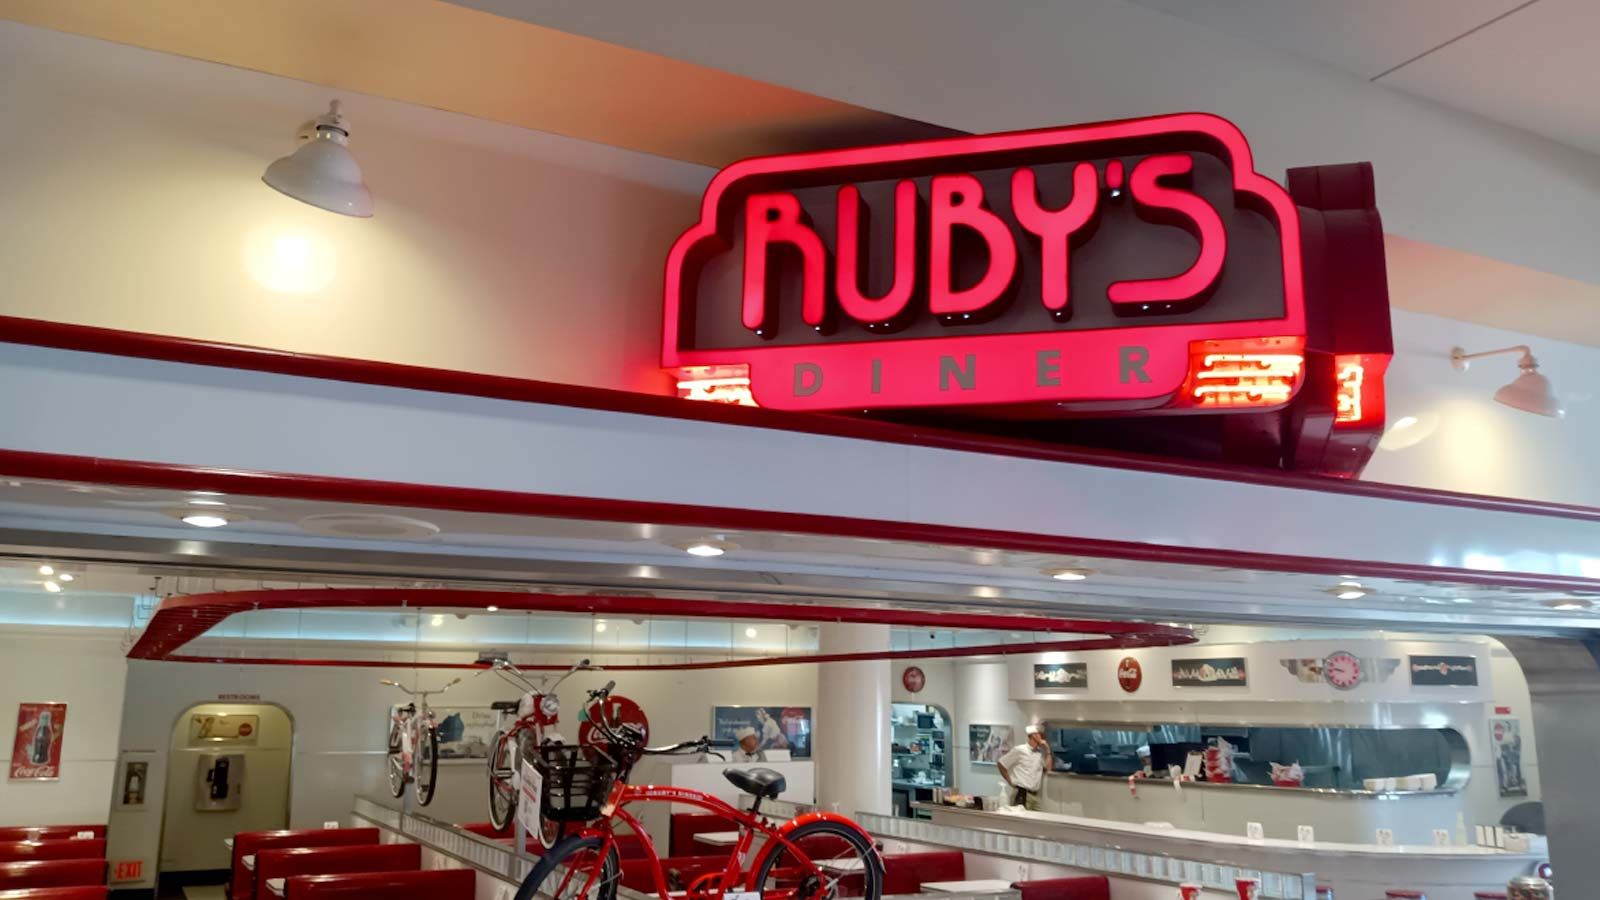 rubys diner interior lighted signage